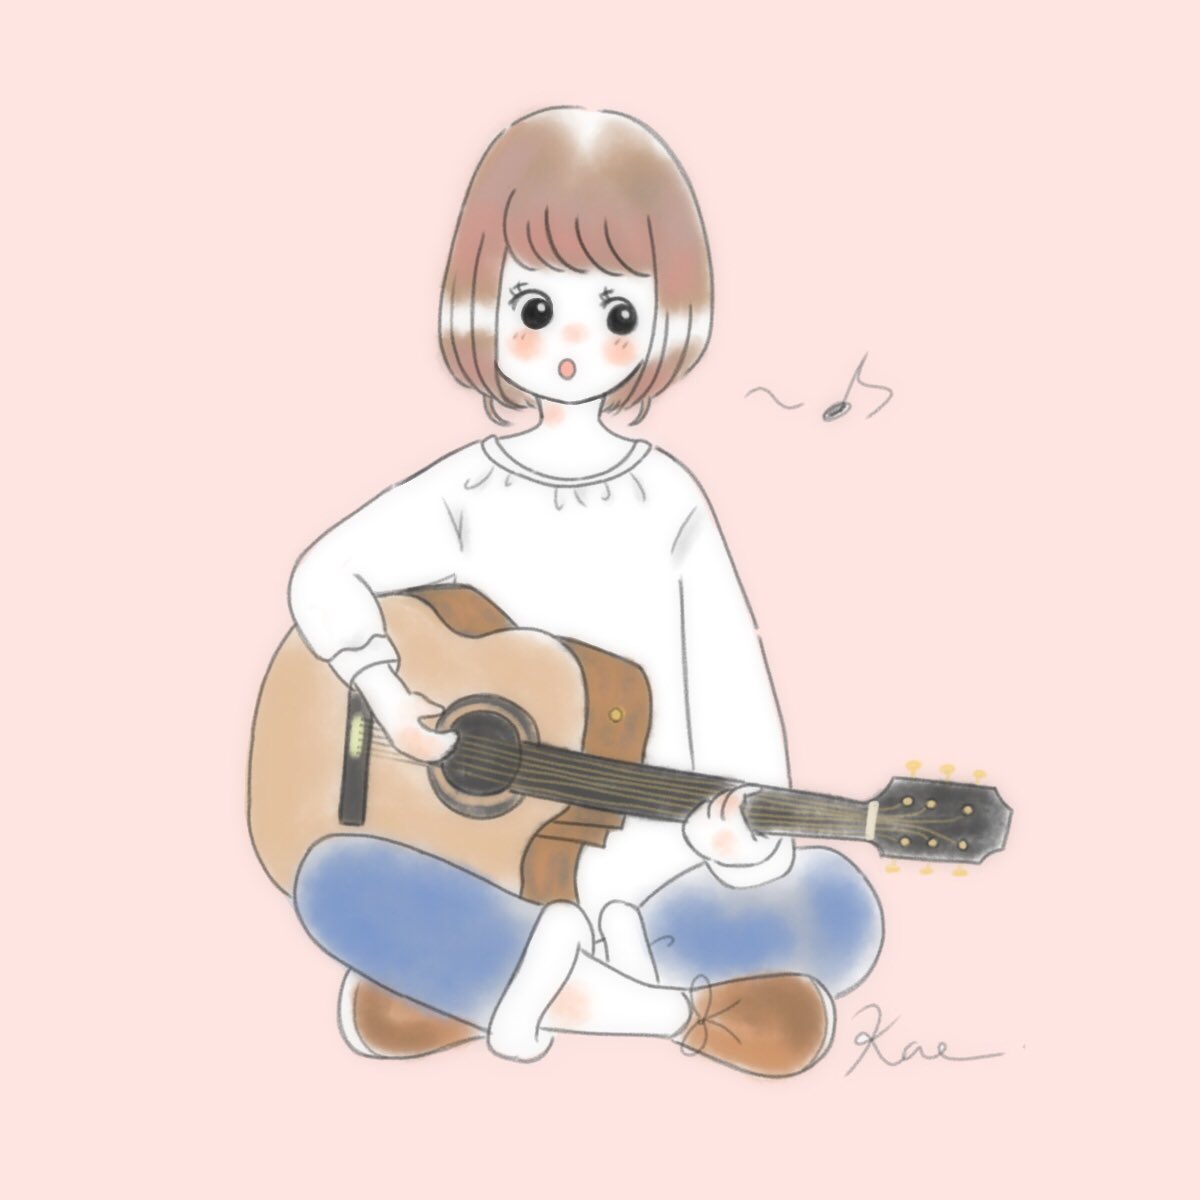 Kaeco V Twitter ギター弾きgirl 女の子 イラスト Guitar ギター 楽器 イラスト好きな人と繋がりたい お絵描き 絵描き ふんわりイラスト T Co Mho7iaxy0i Twitter